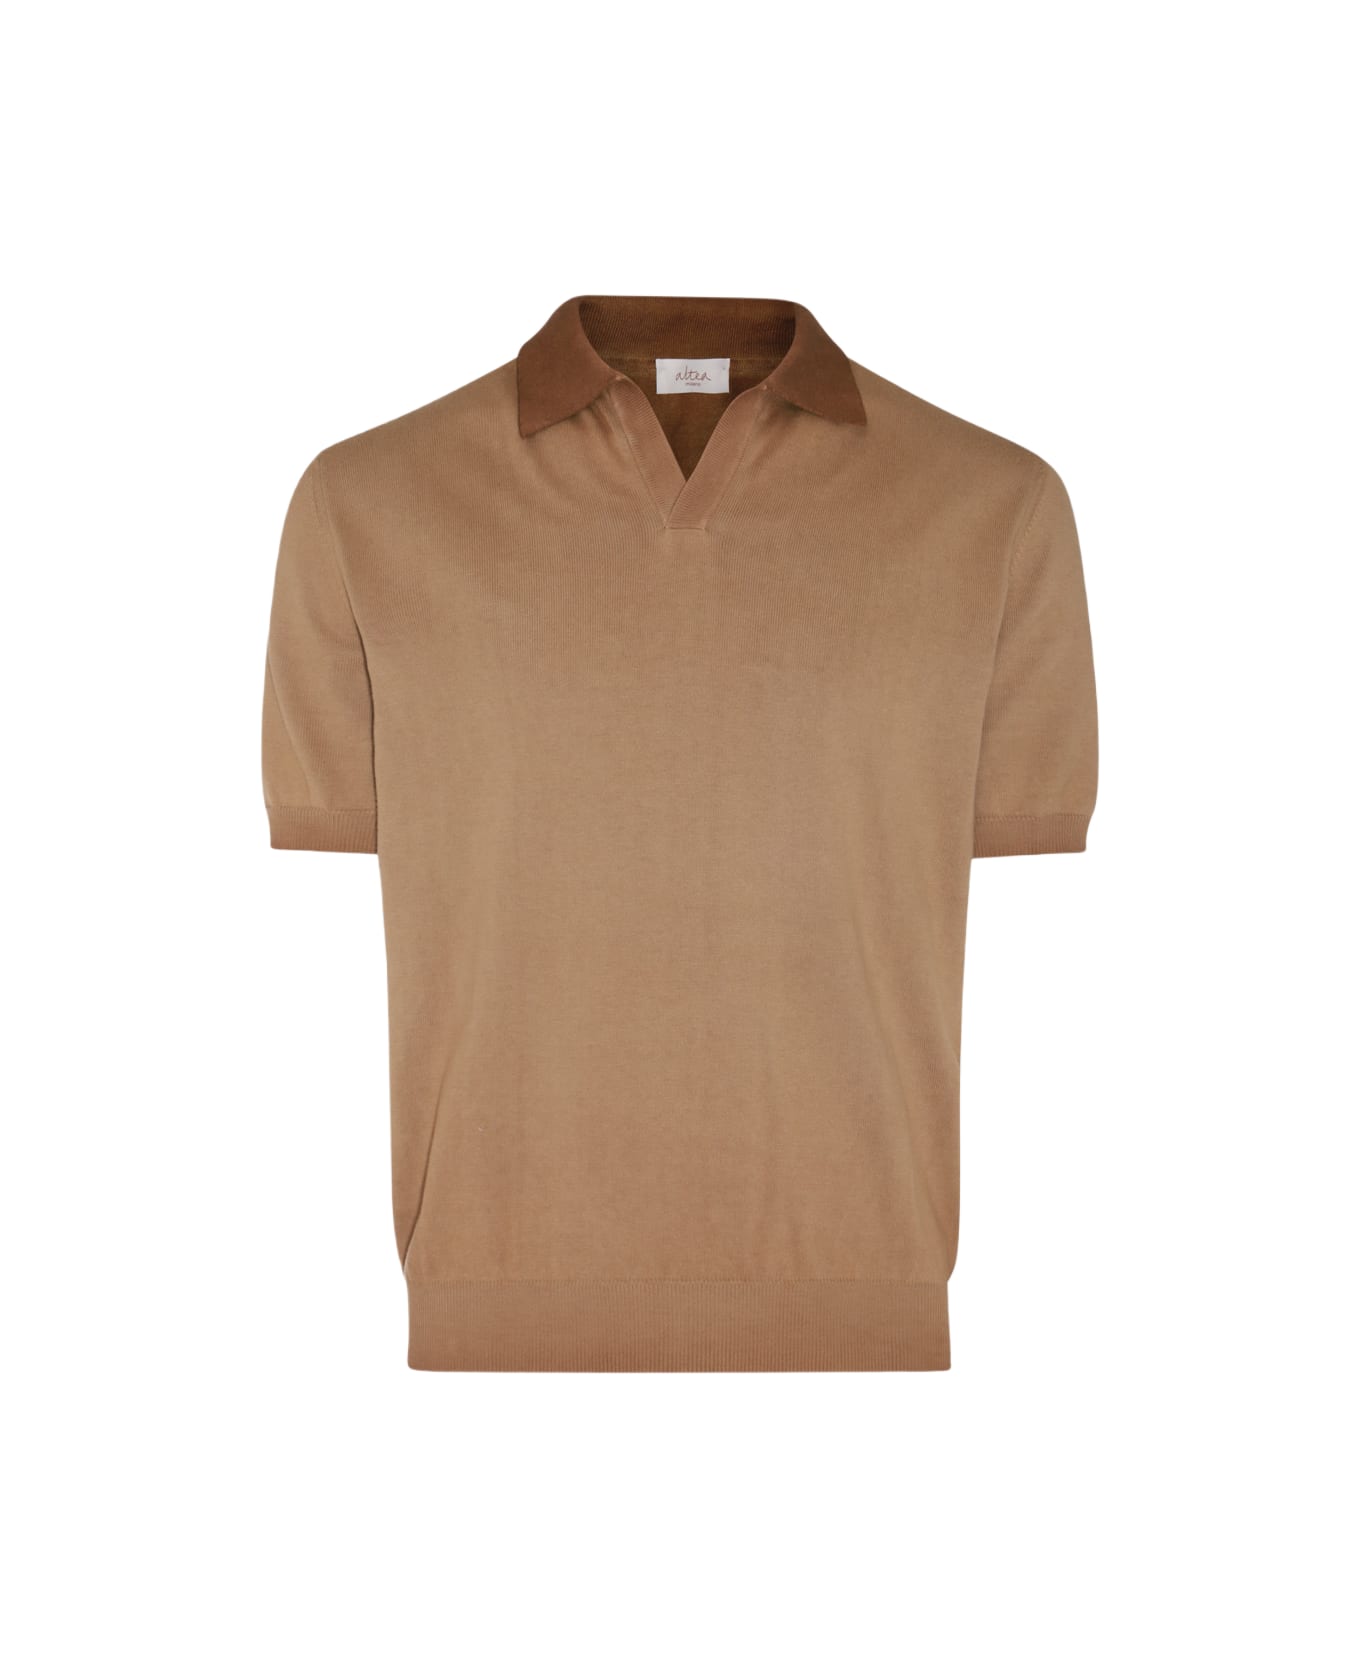 Altea Camel Cotton Polo Shirt - Camel ポロシャツ